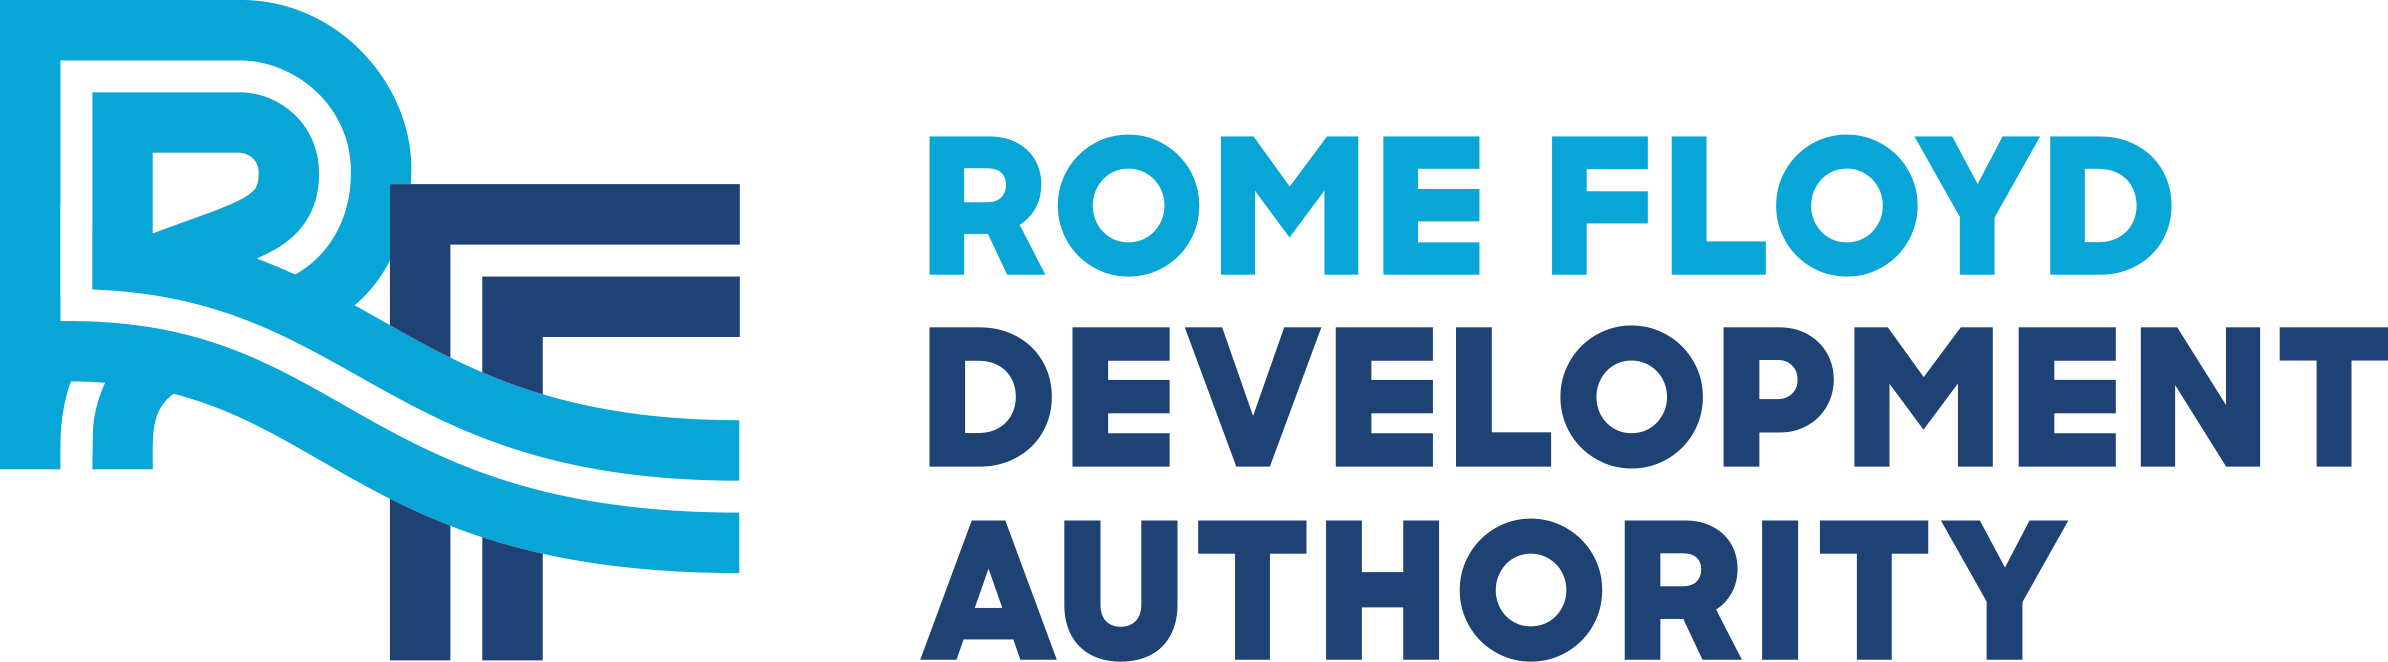 Rome Floyd Development Authority